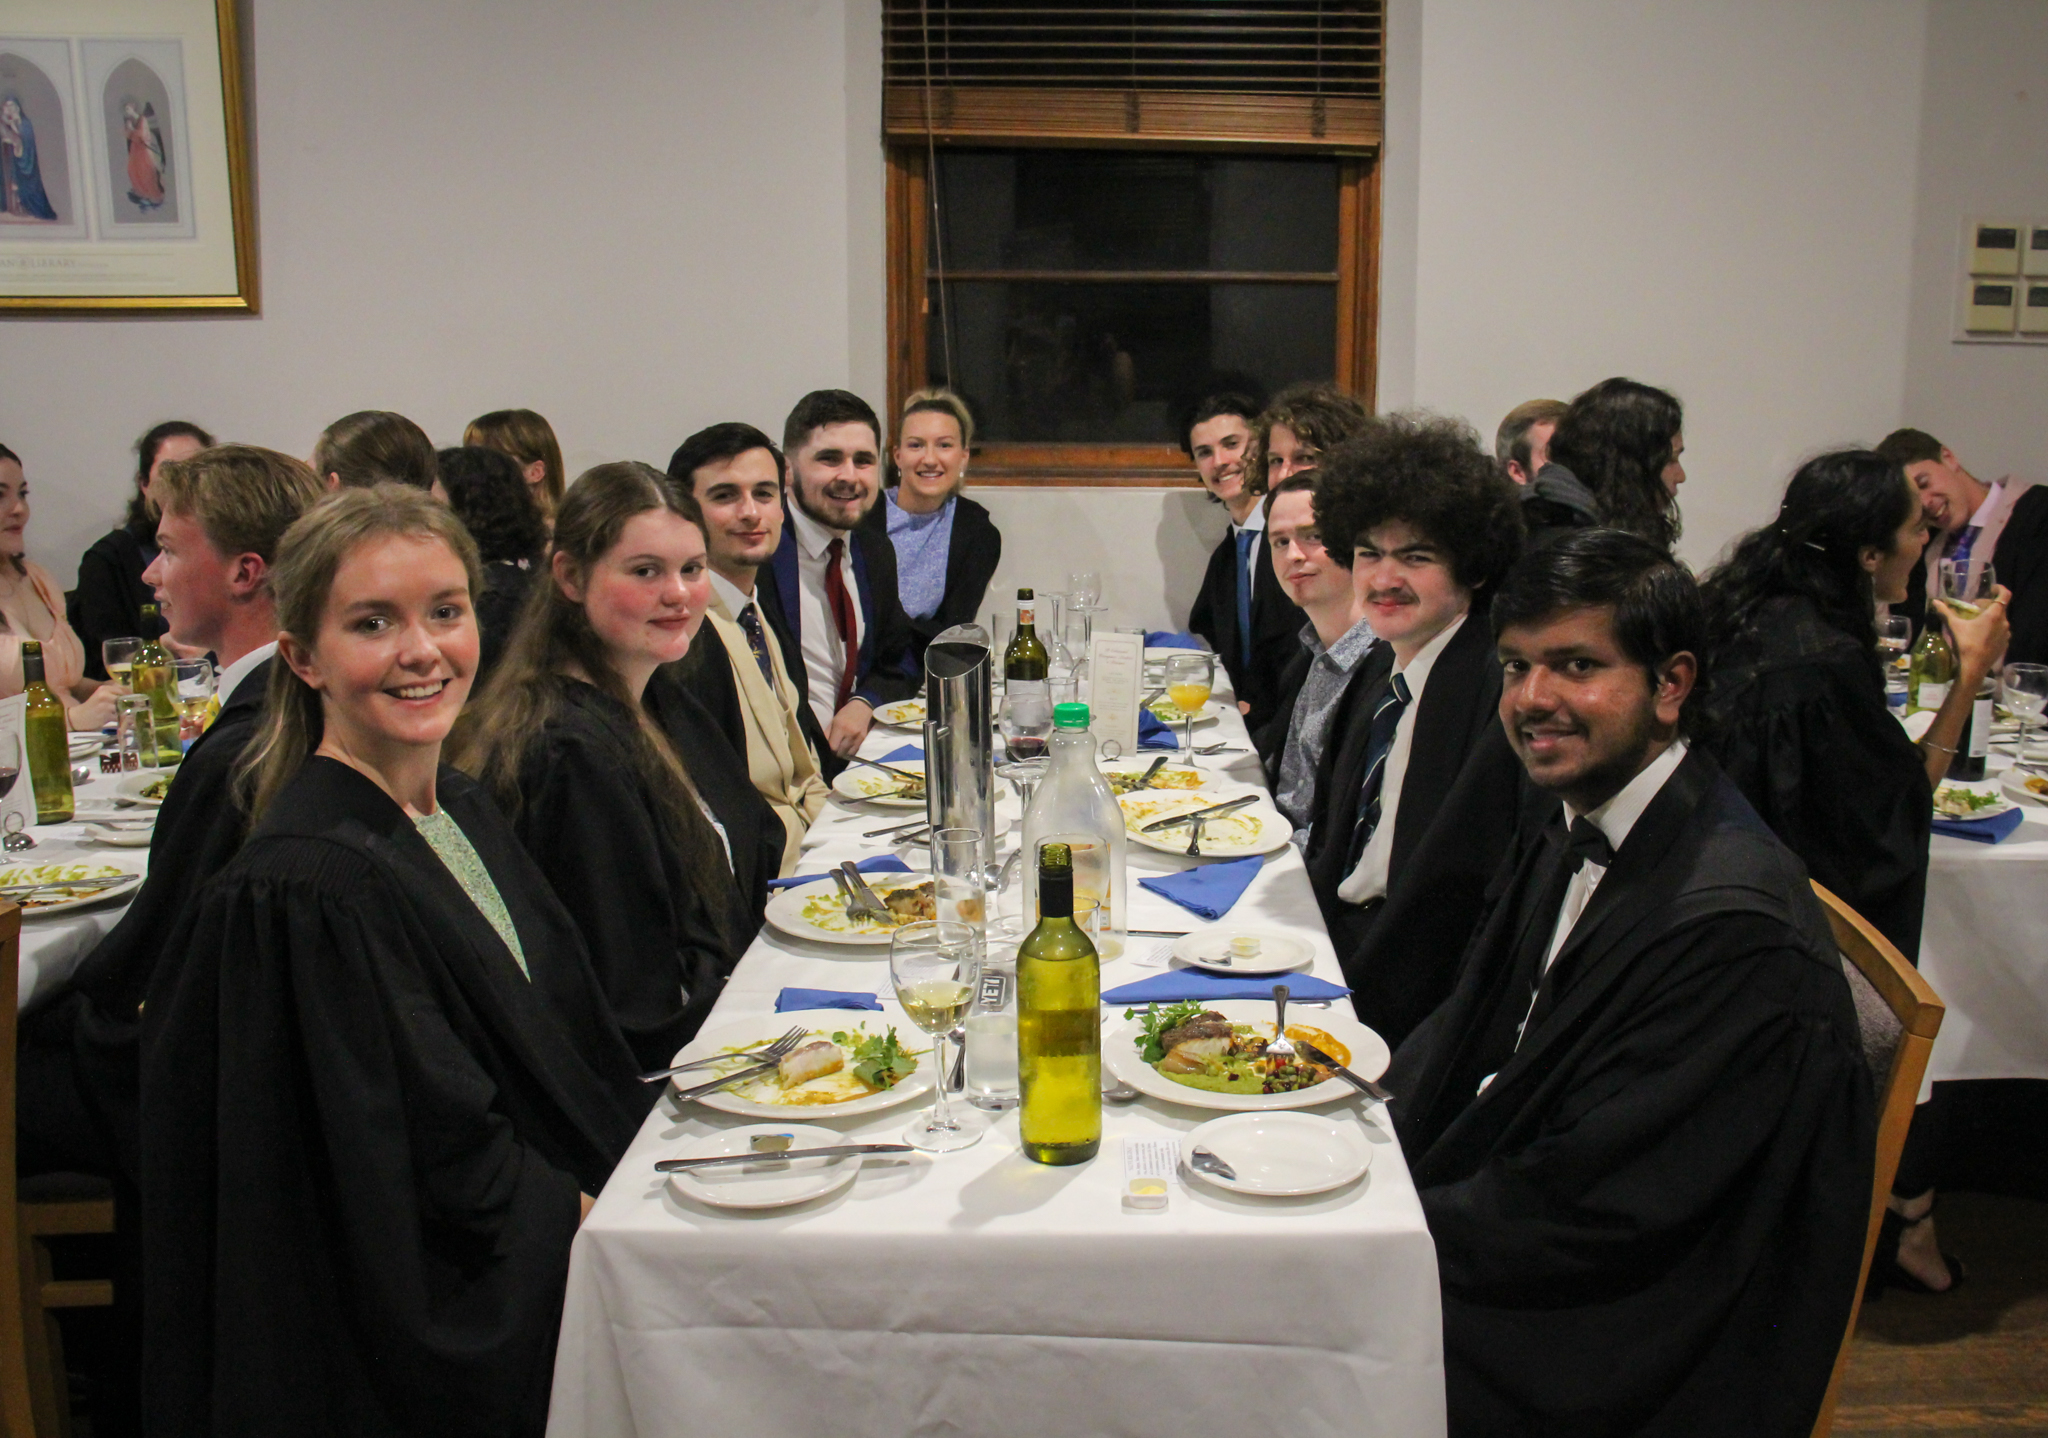 St-Edmund-Campion-Dinner-2022-12. Campion College Australia.